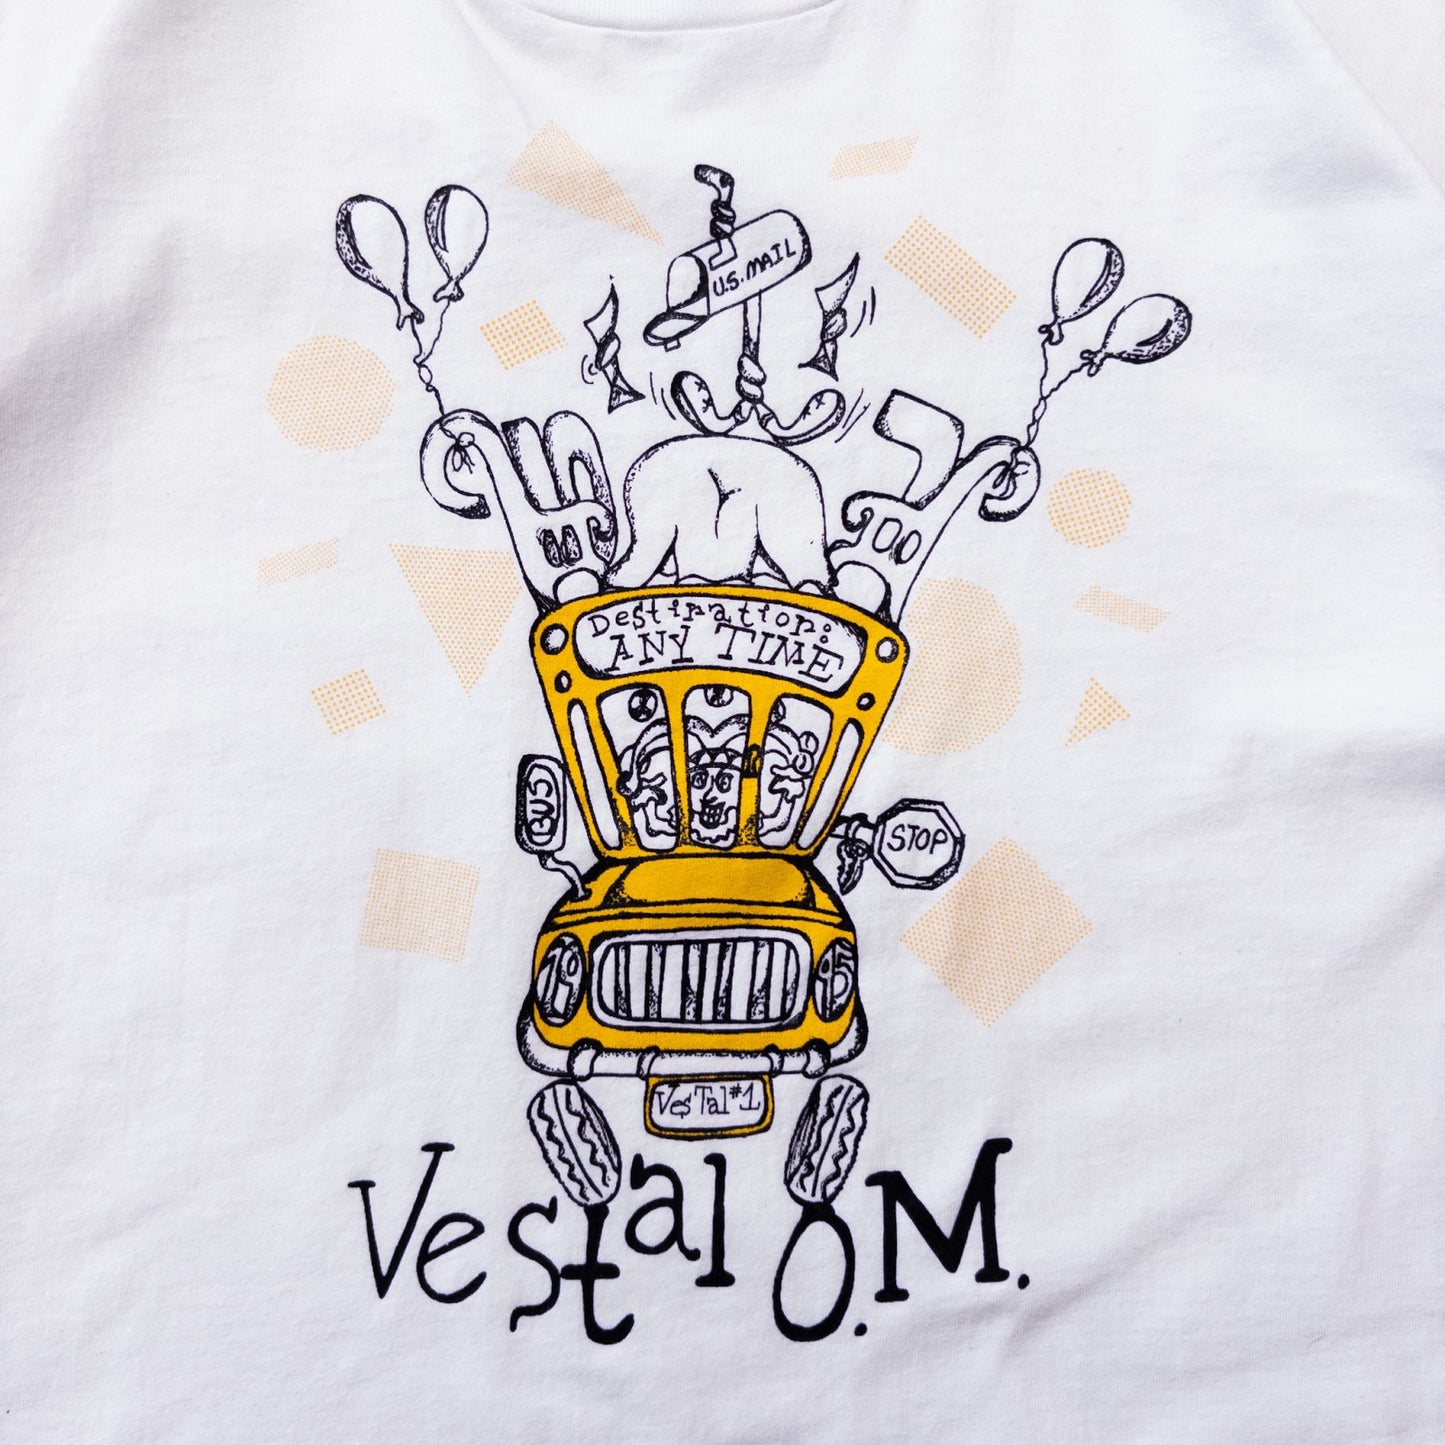 80s ”Vestal O.M” XL